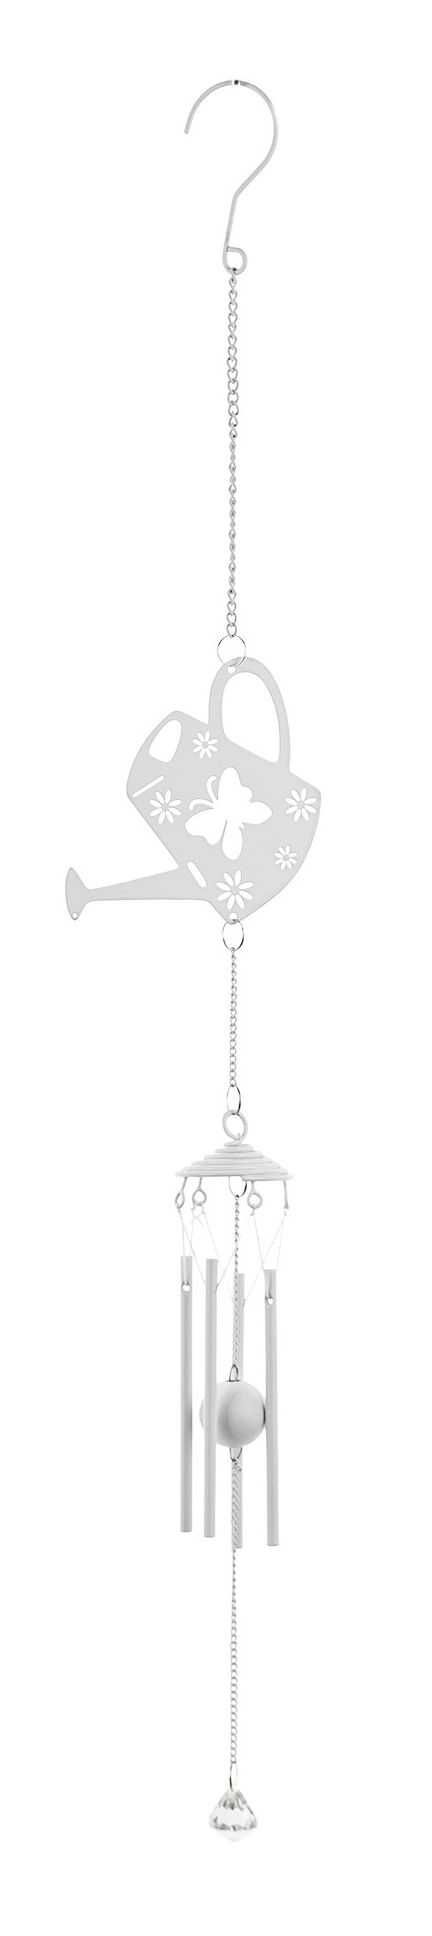 Dekoracja wisząca biała metalowa ozdobna Konewka 72 cm dzwonek